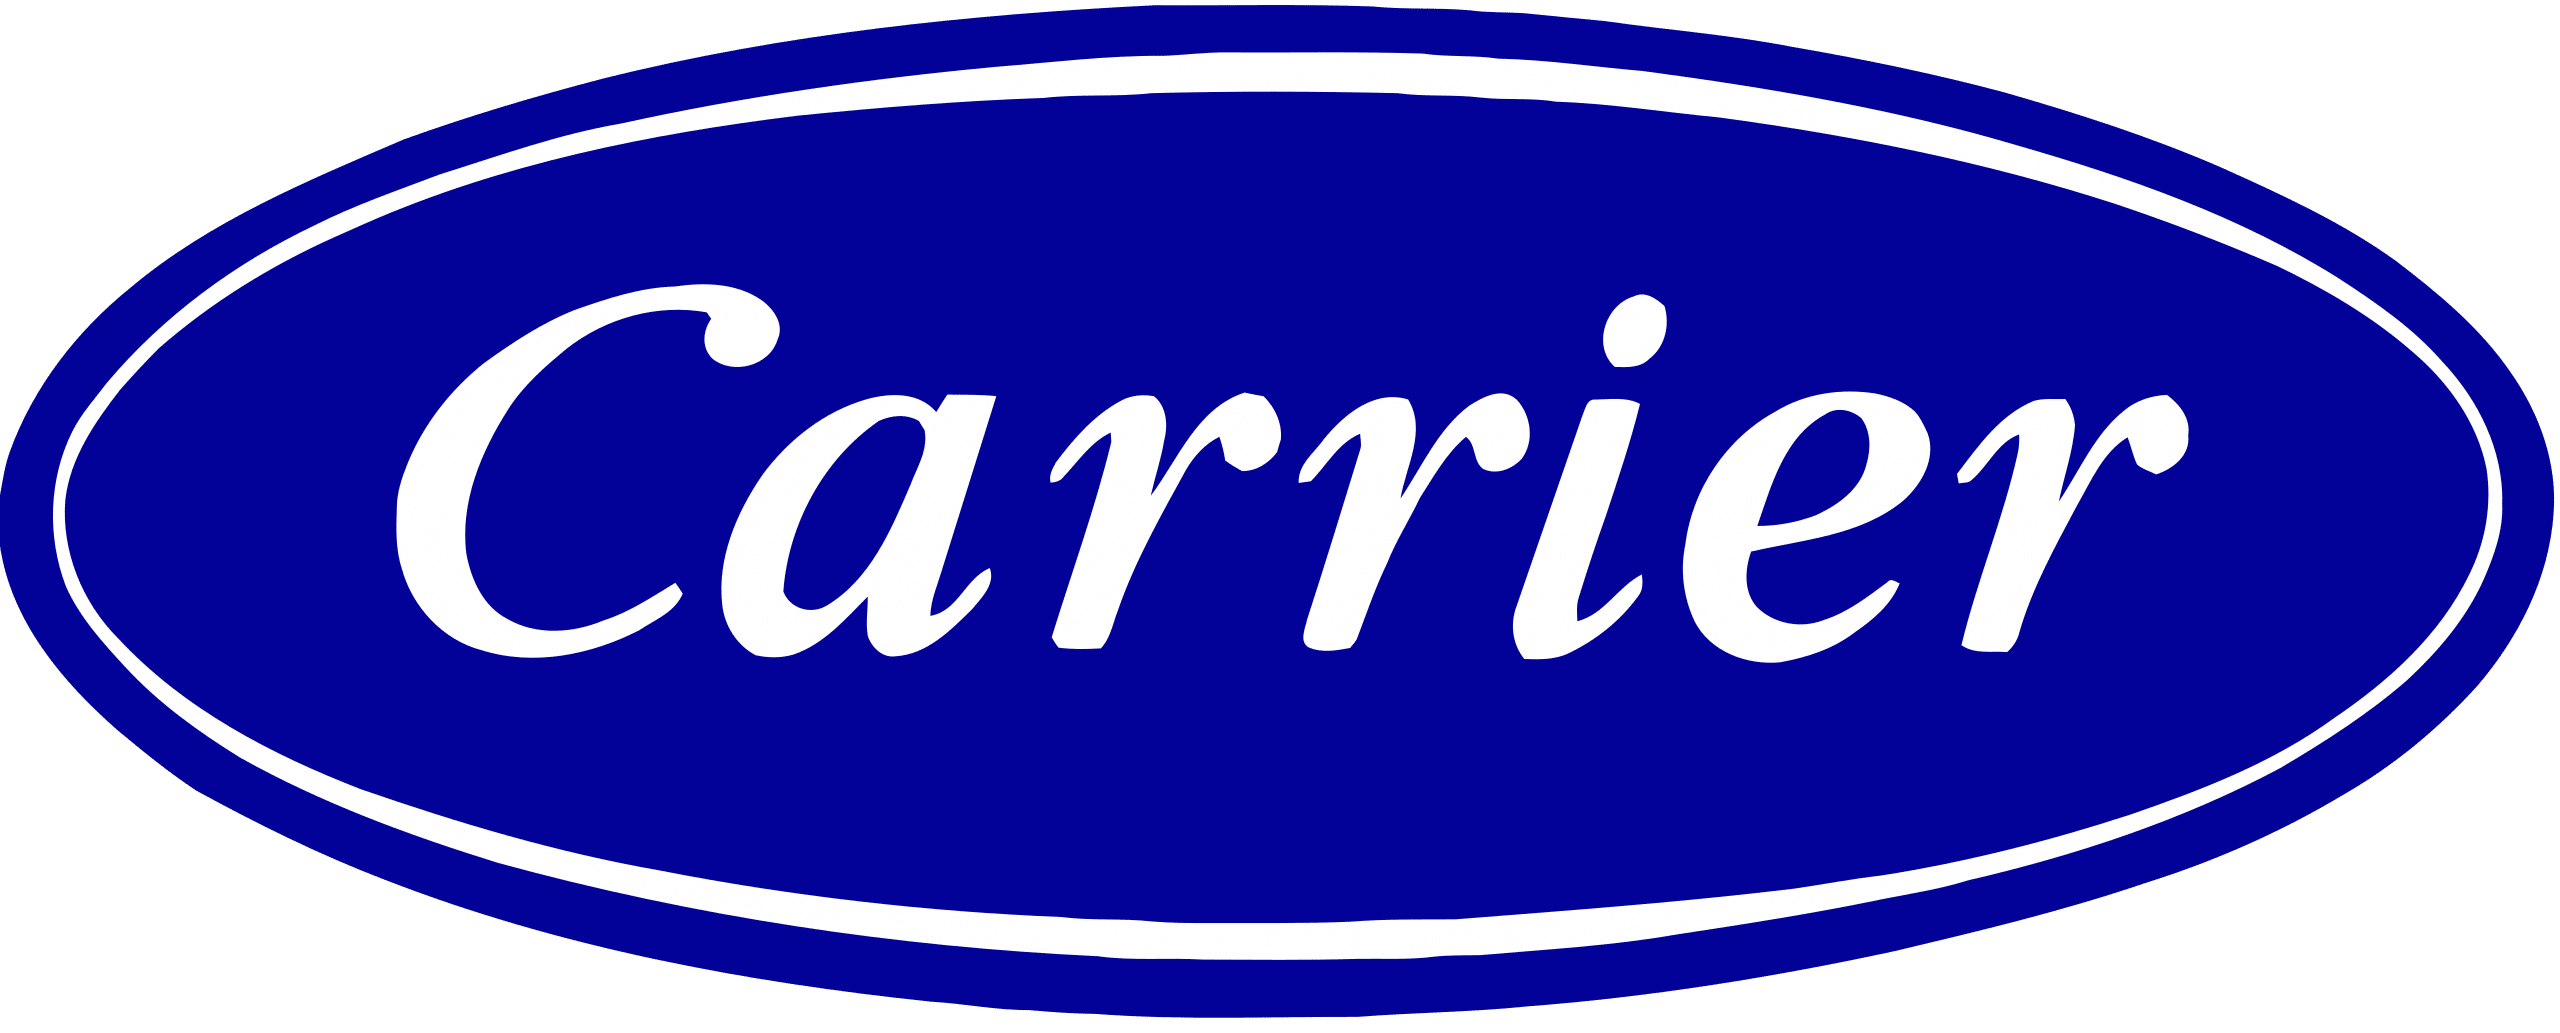 Logo-Carrier